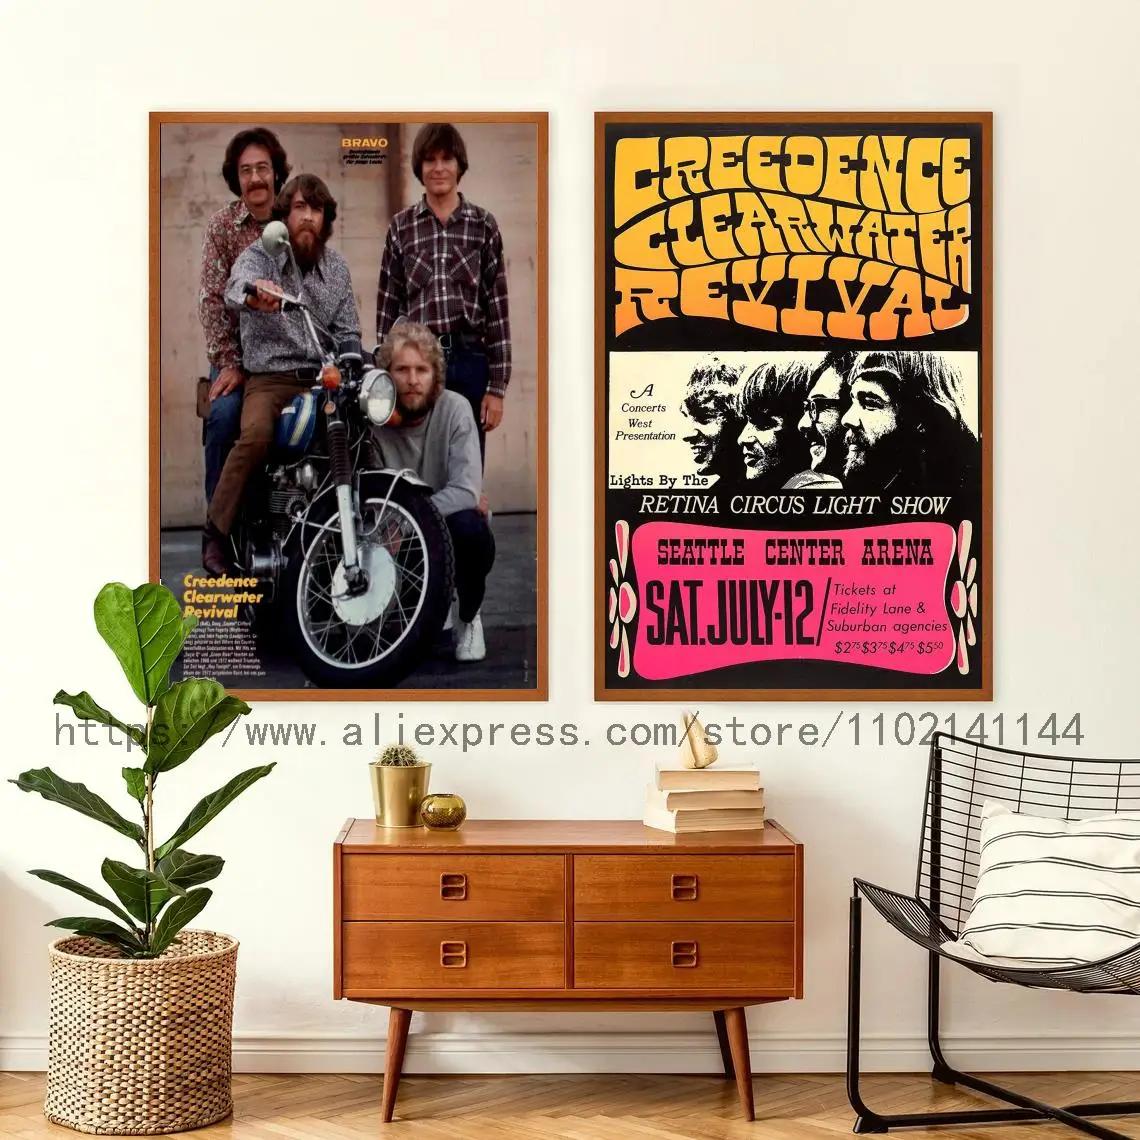 크리덴스 클리어워터 리바이벌 밴드 장식 아트 포스터, 월 아트, 맞춤형 선물, 현대, 가족, 침실 장식, 캔버스 포스터